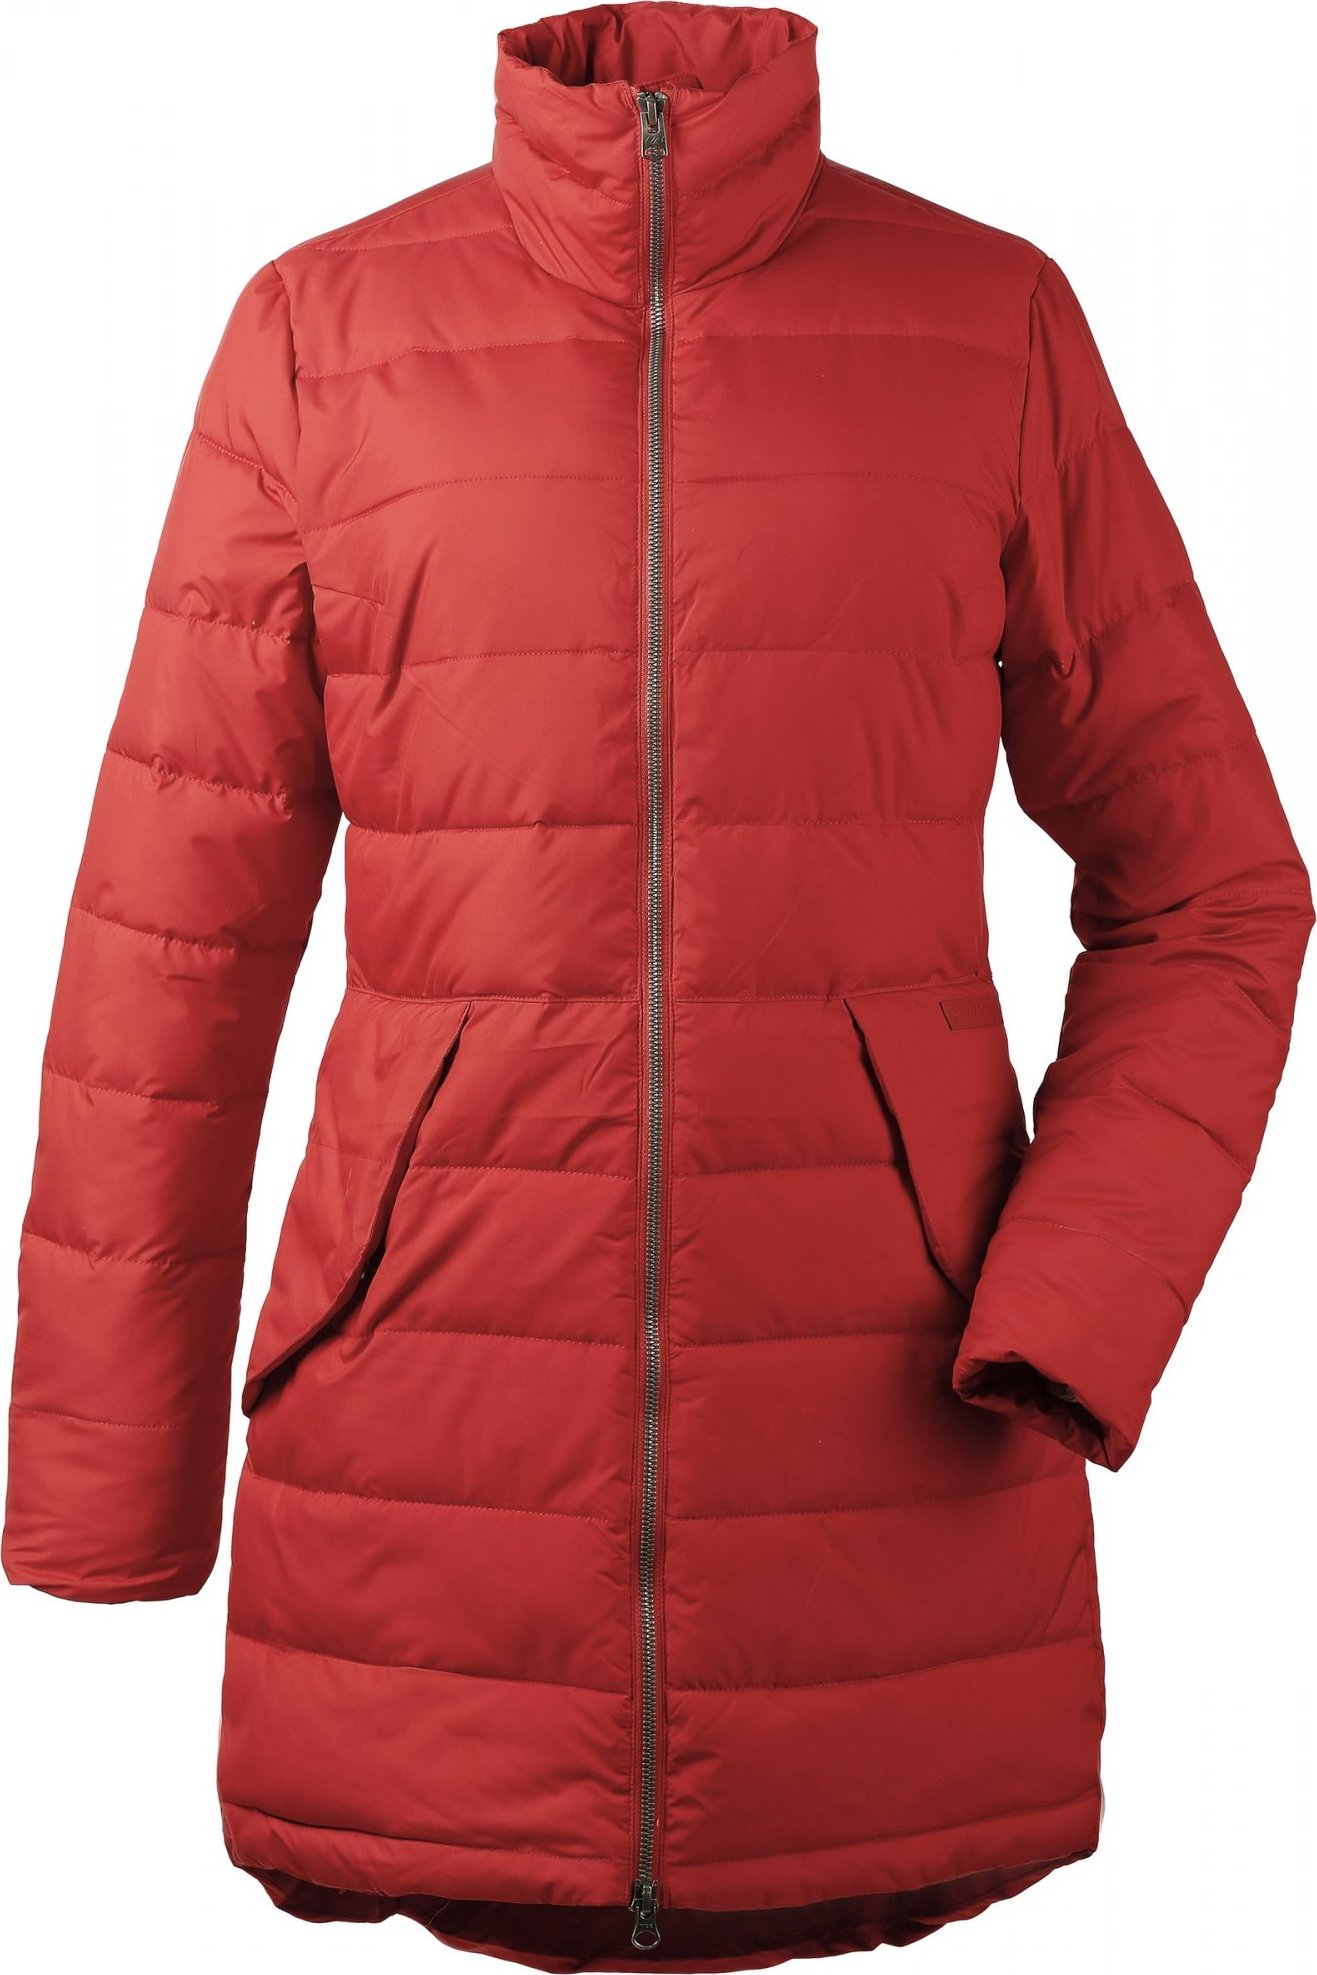 Dámský zimní kabát DIDRIKSONS Hildur oranžový Velikost: 38